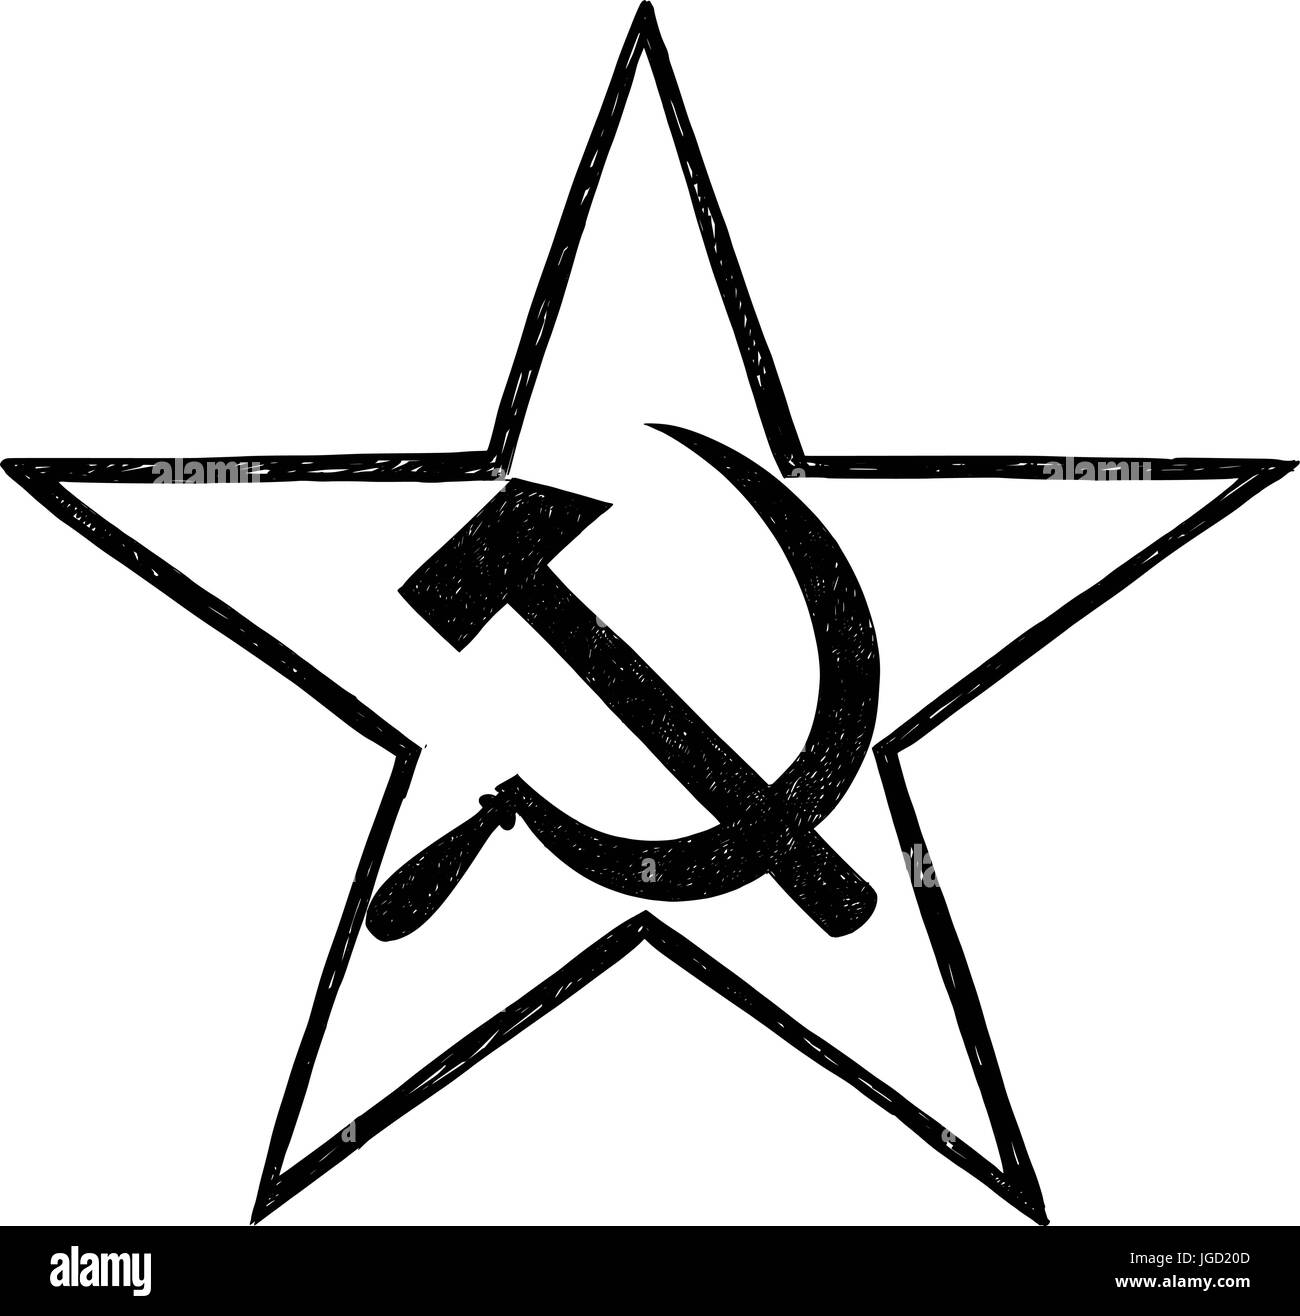 Falce e martello dentro star- simbolo del comunismo e Unione Sovietica Illustrazione Vettoriale